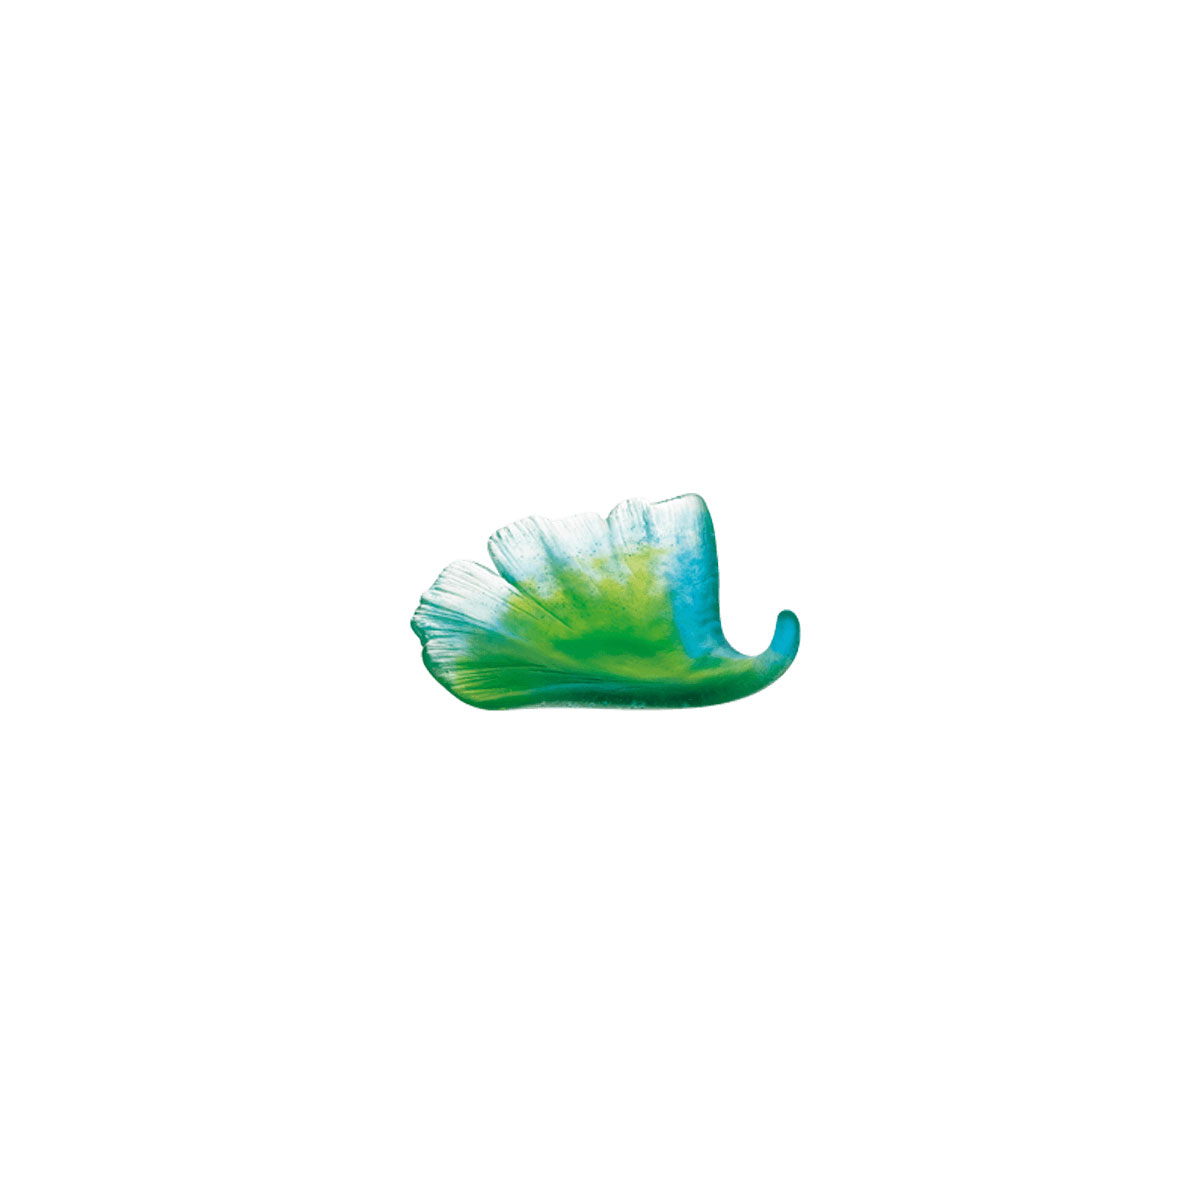 Daum Ginkgo Leaf in Green